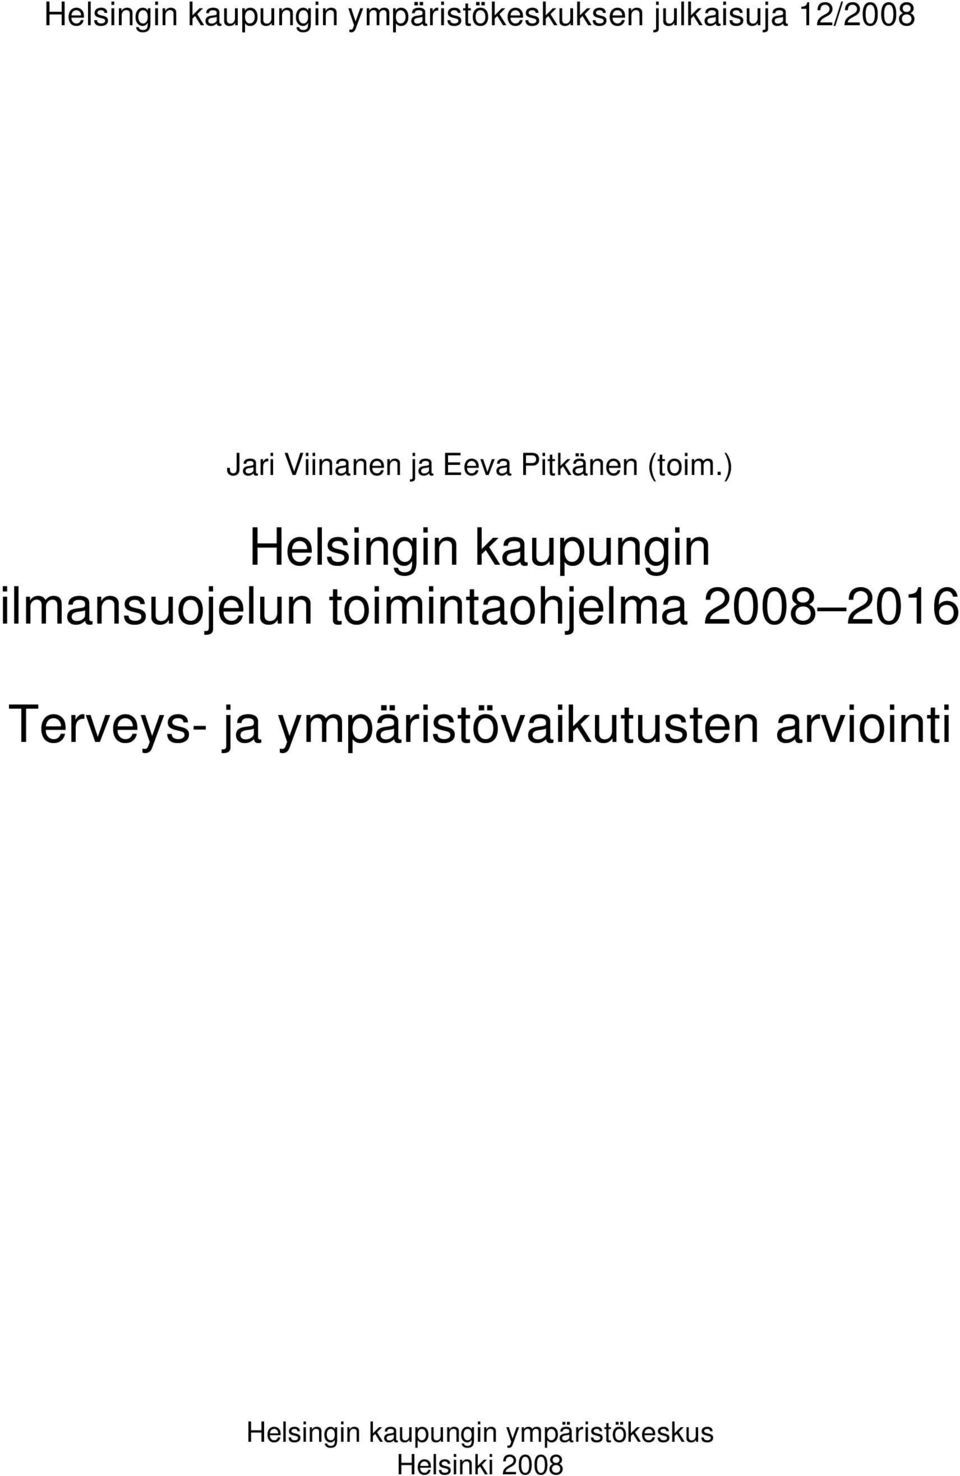 ) Helsingin kaupungin ilmansuojelun toimintaohjelma 2008 2016